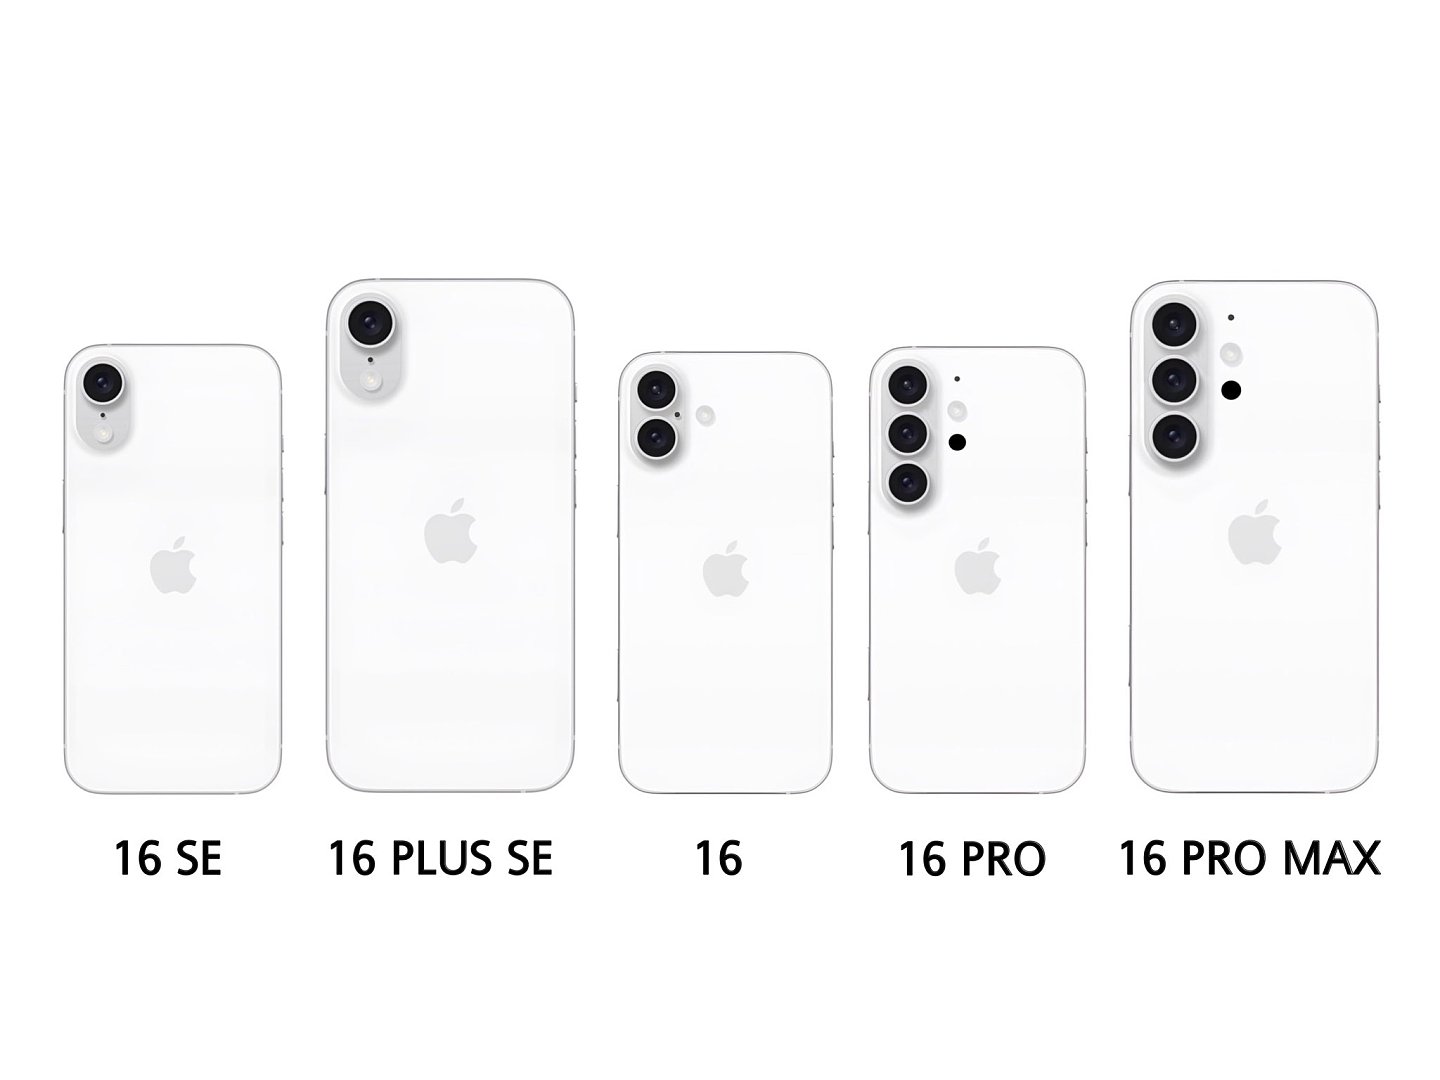 消息称苹果 iPhone 16 Pro Max 将拥有 iPhone 有史以来最强手机续航能力，仍配备 8GB 内存 - 3